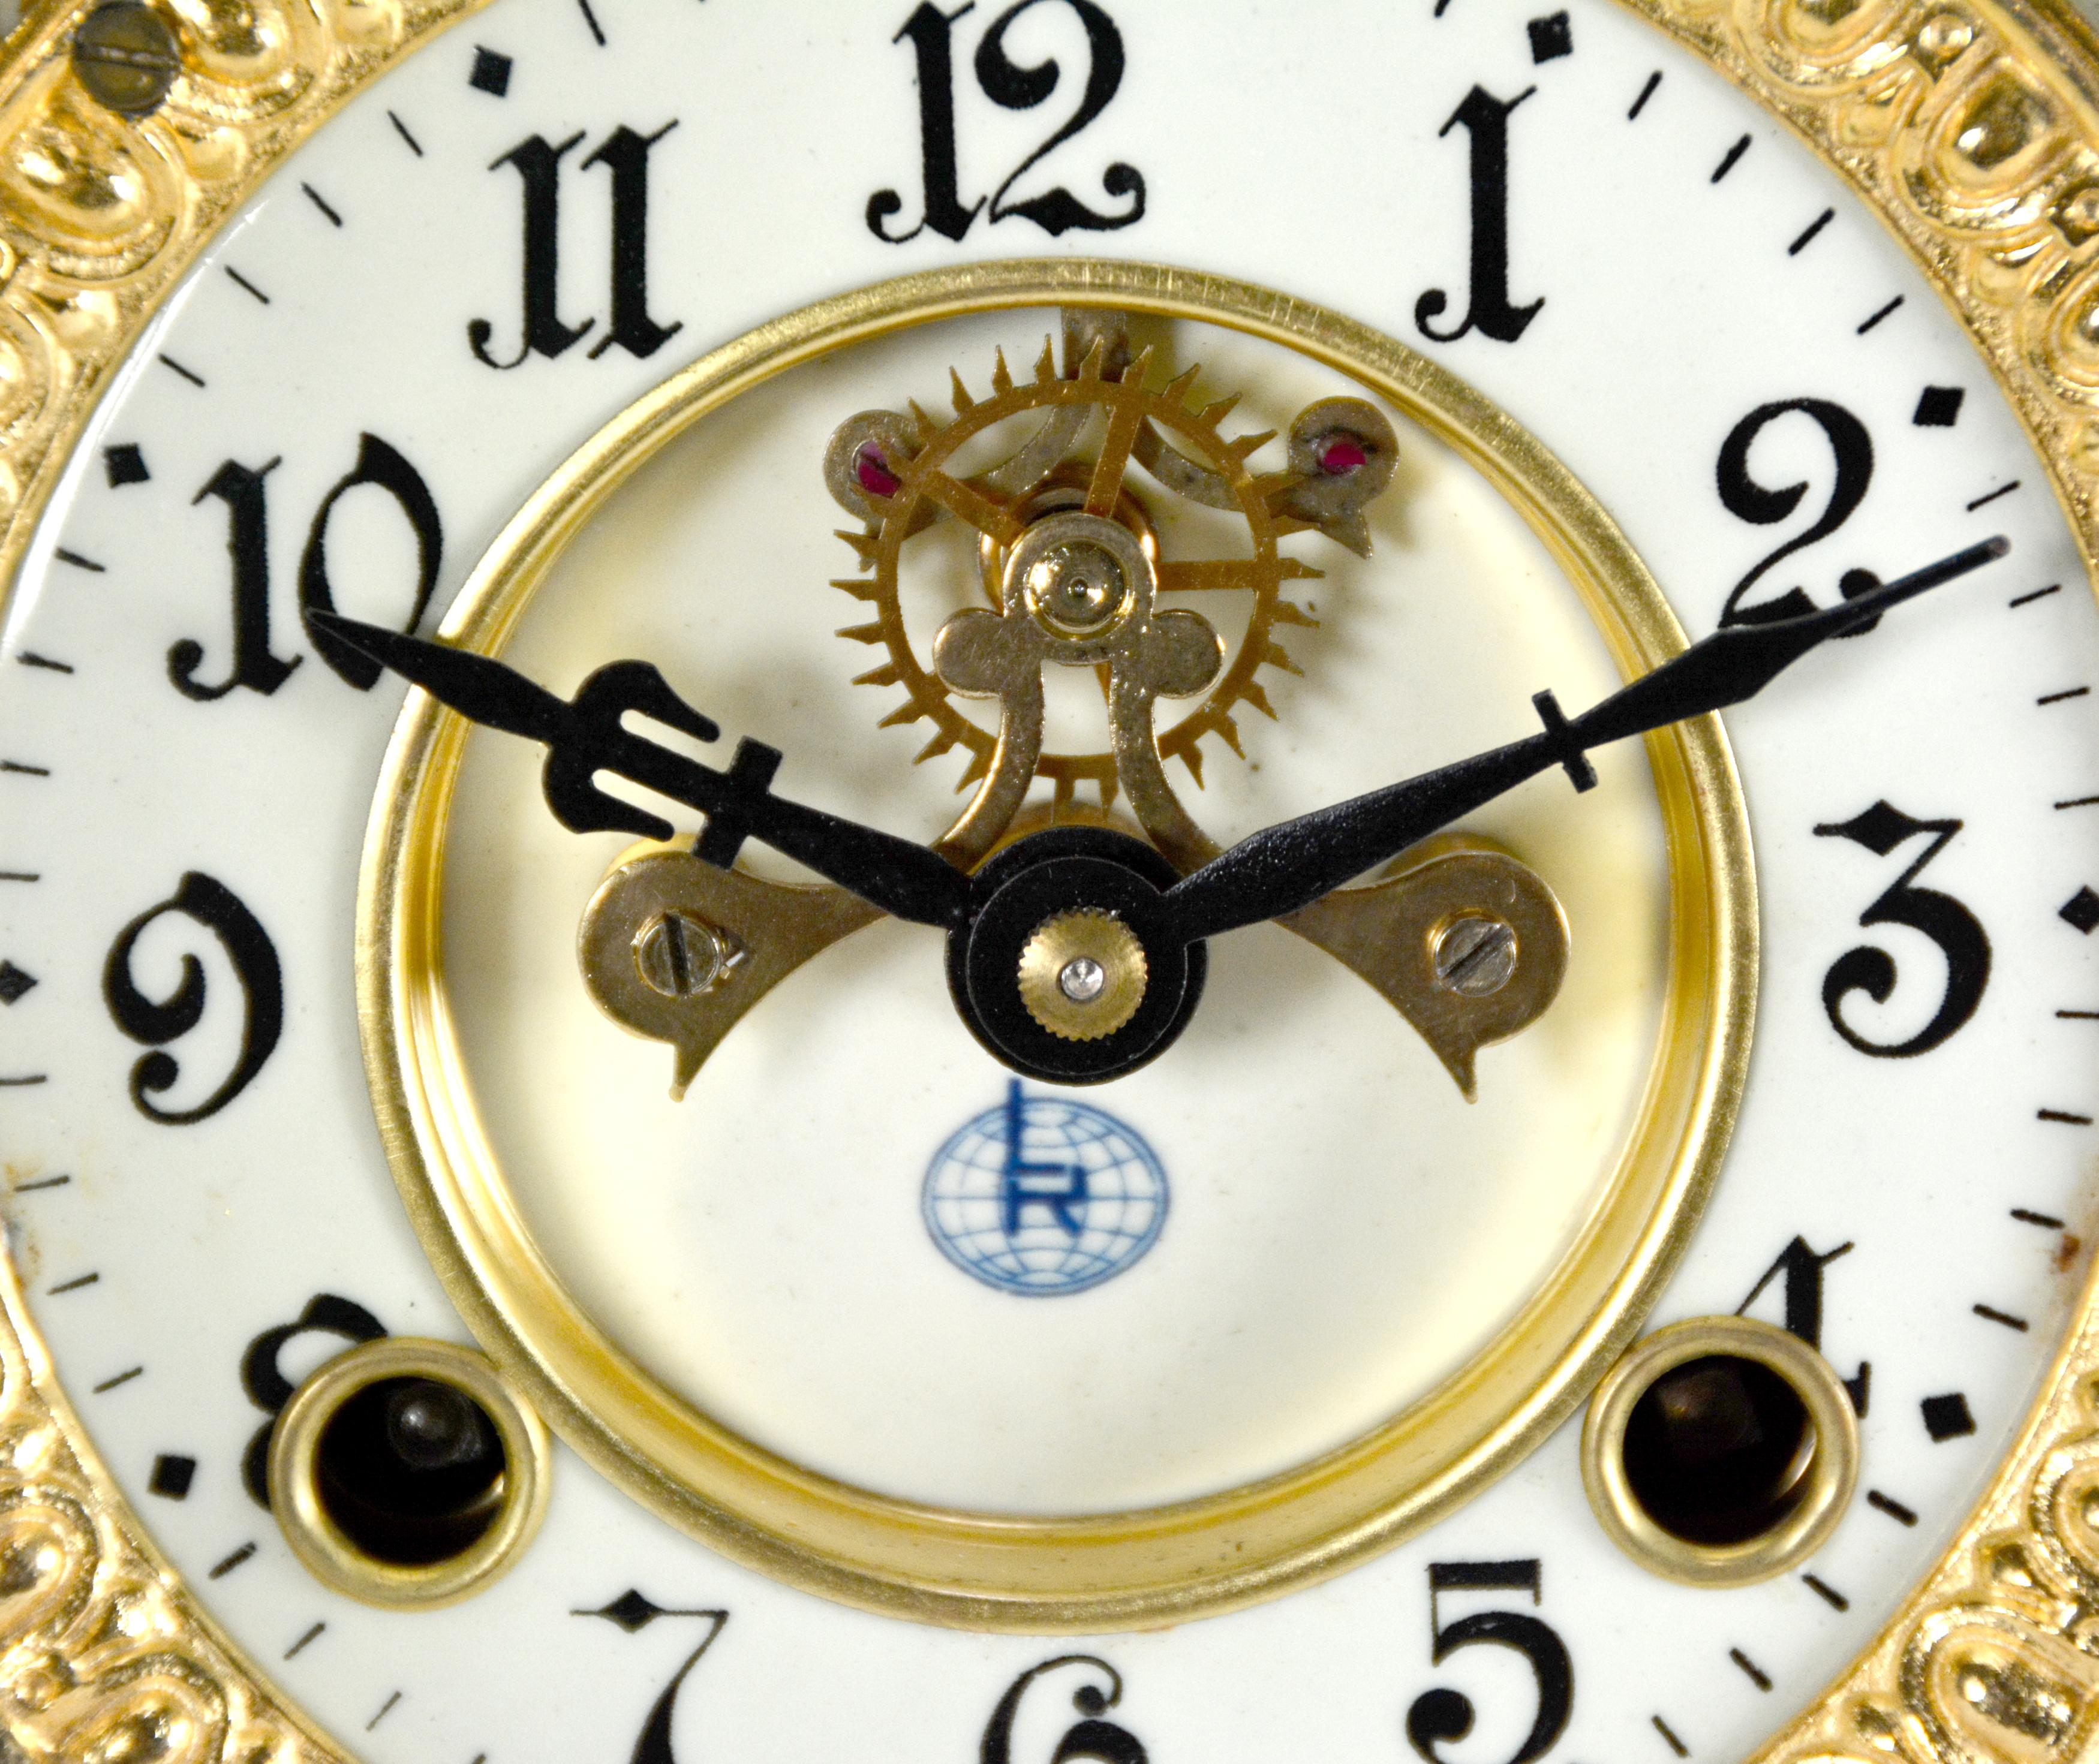 Ansonia Style Visible Escapement Pink & Blue Floral 24K Porcelain Mantle Clock For Sale 2